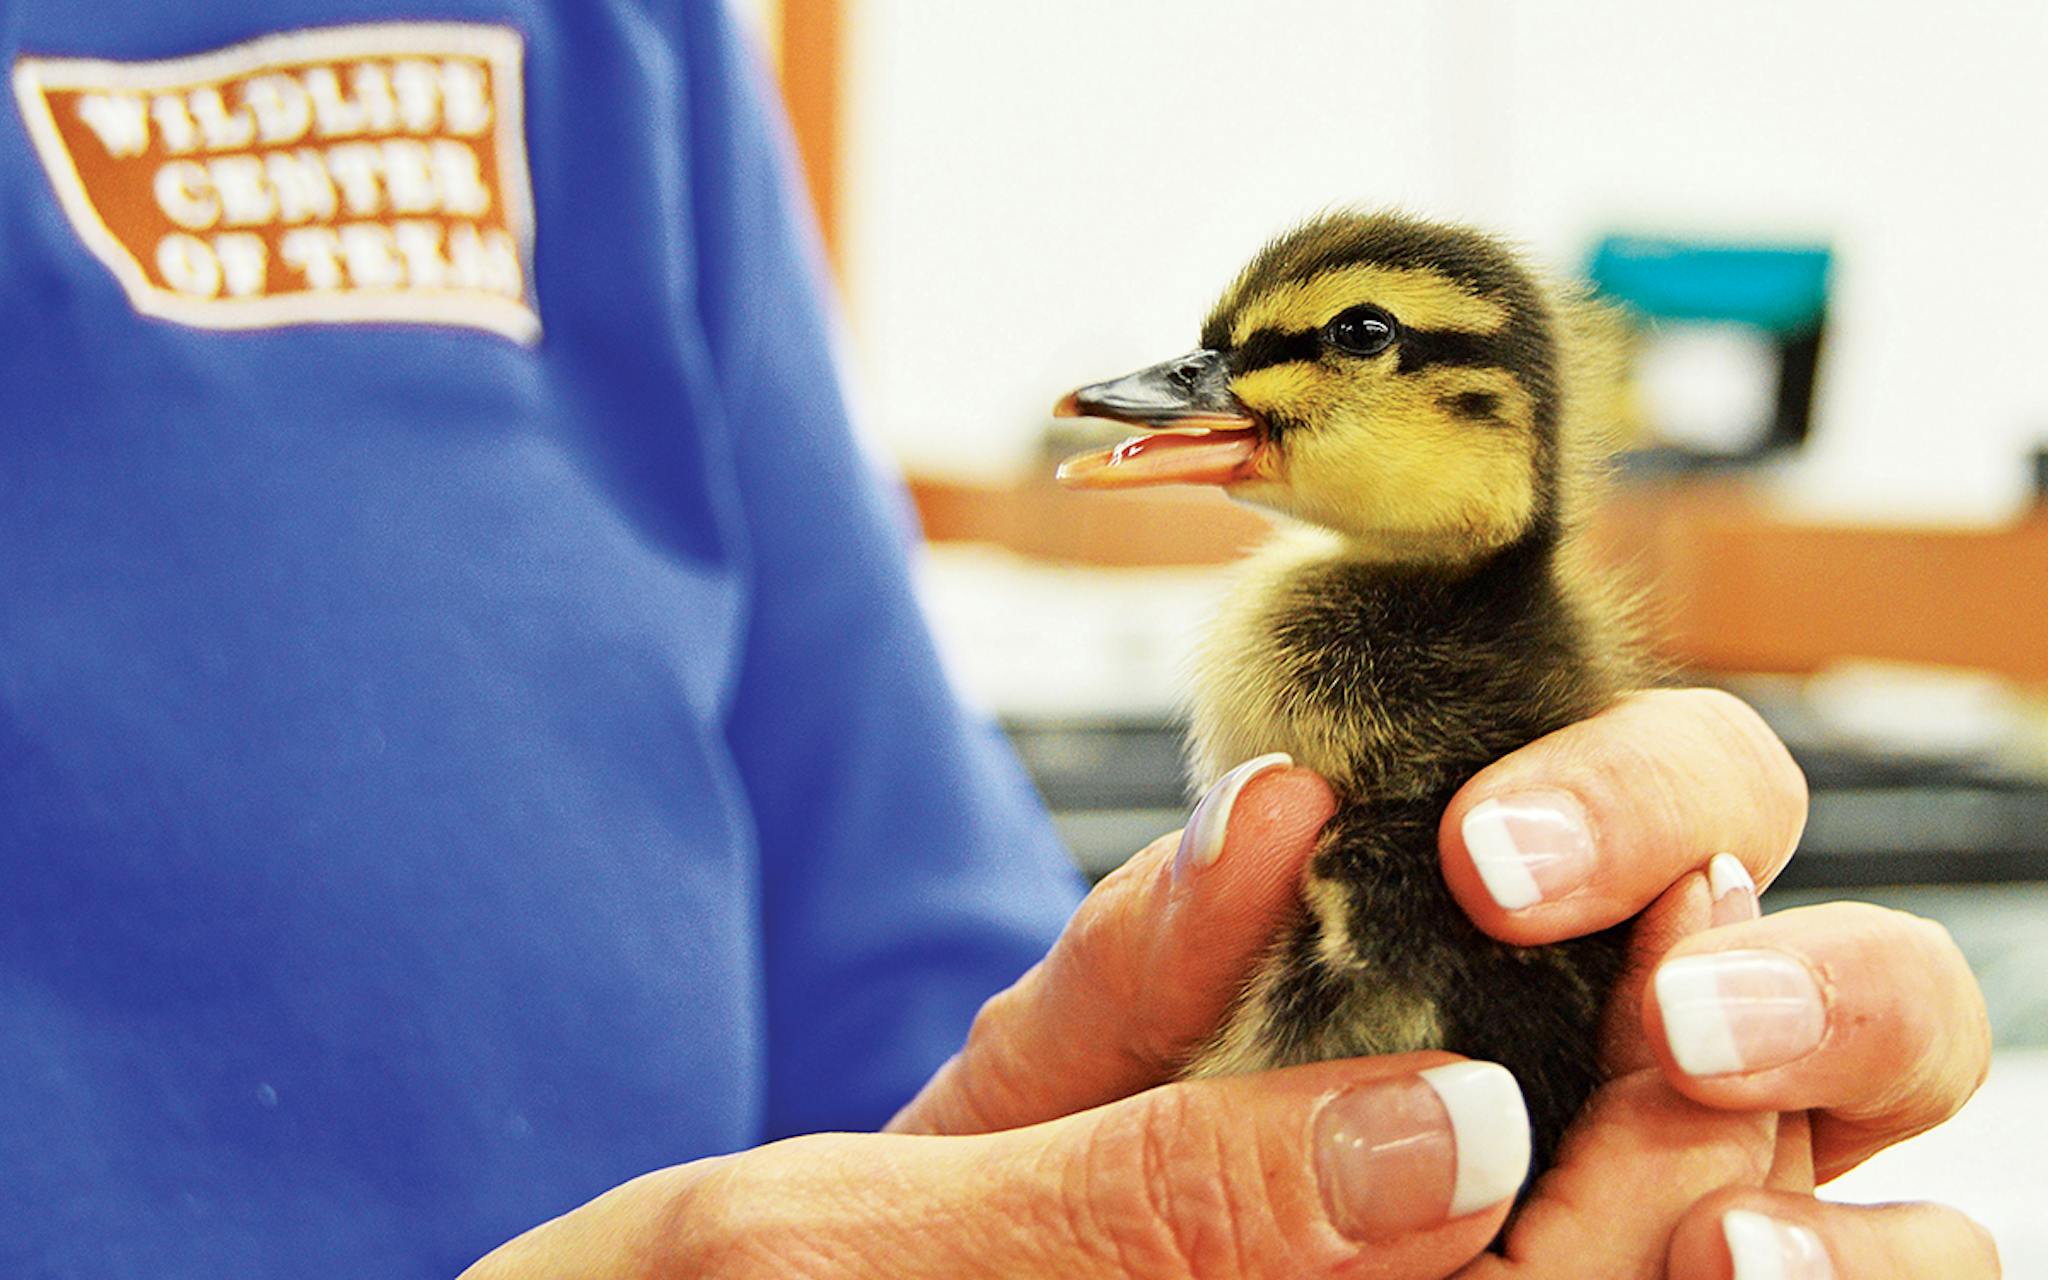 Baby duck being held by a volunteer.